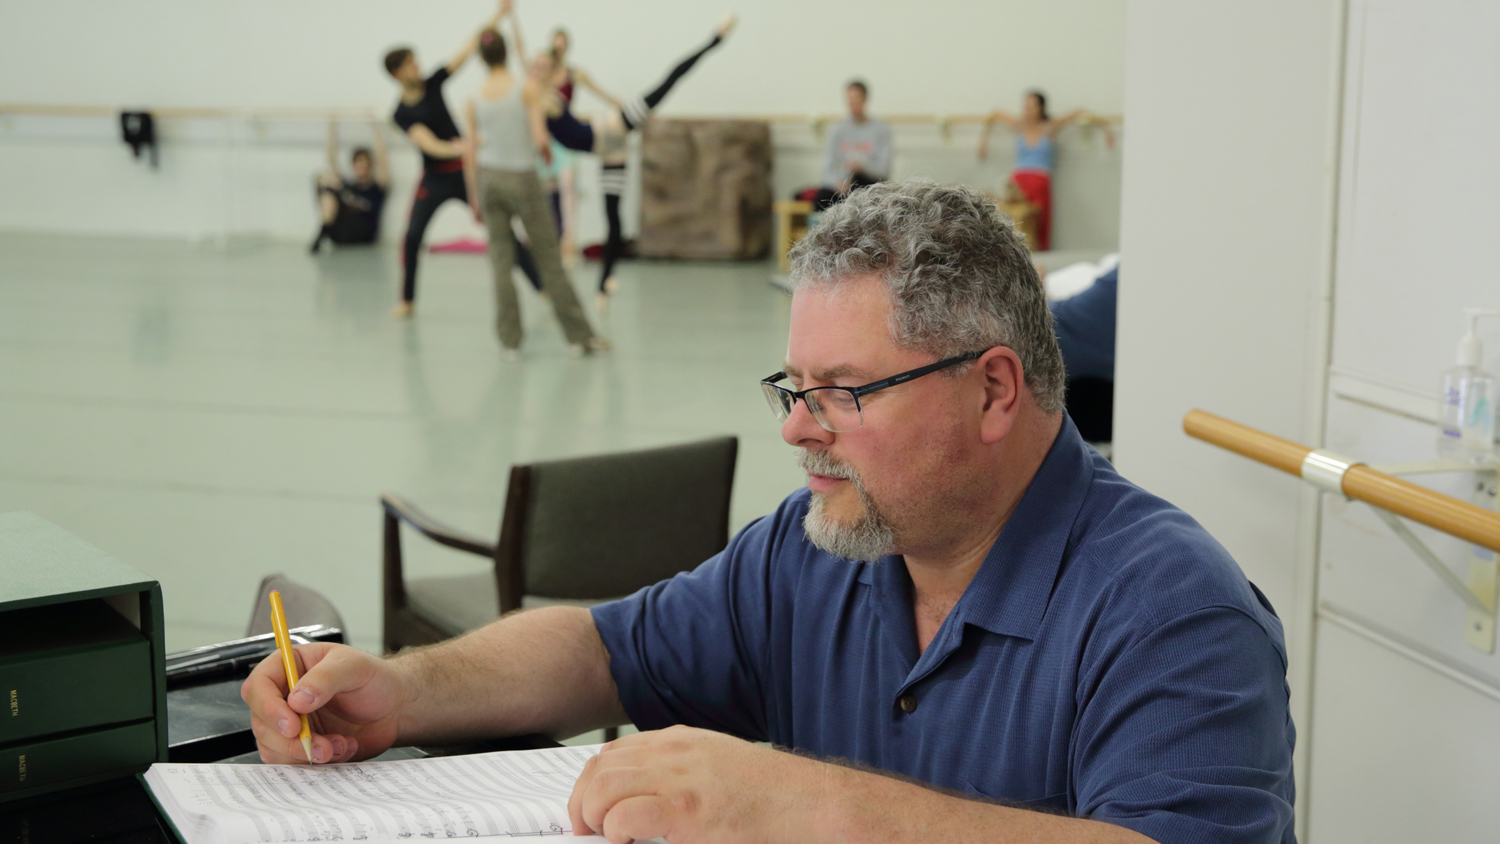 JMark Scearce composes music for Carolina Ballet